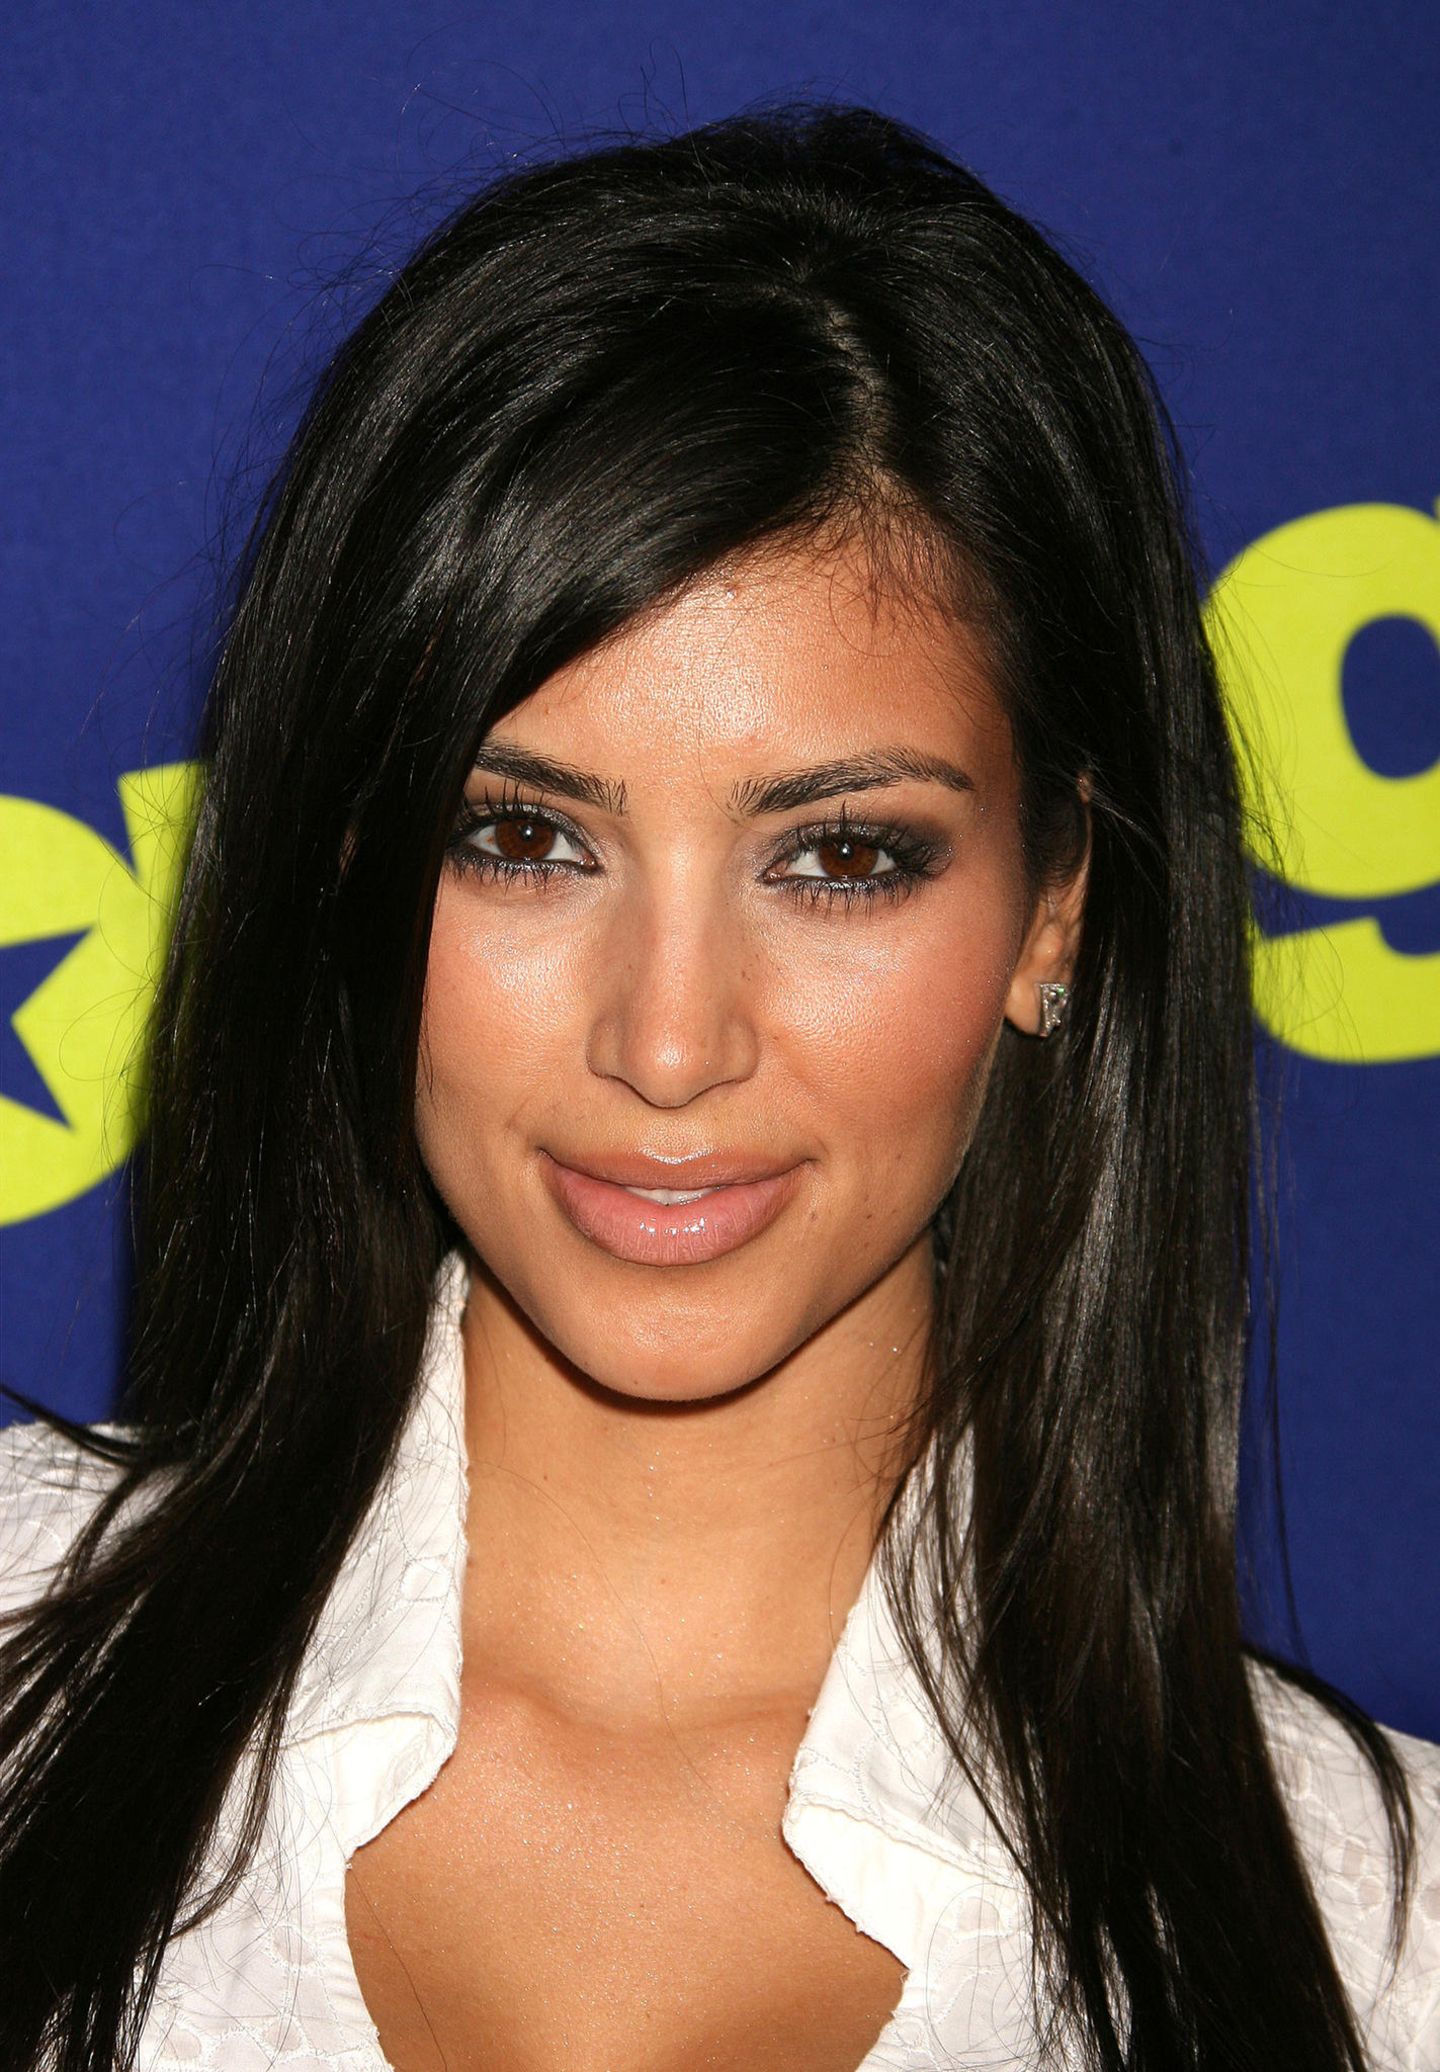 Dank ihrer Reality-Serie "Keeping up with the Kardashians" ist die optische Veränderung von Kim Kardashian gut dokumentiert. 2006 gleicht das Gesicht der Unternehmerin ihrem heutigen Erscheinungsbild kaum. 